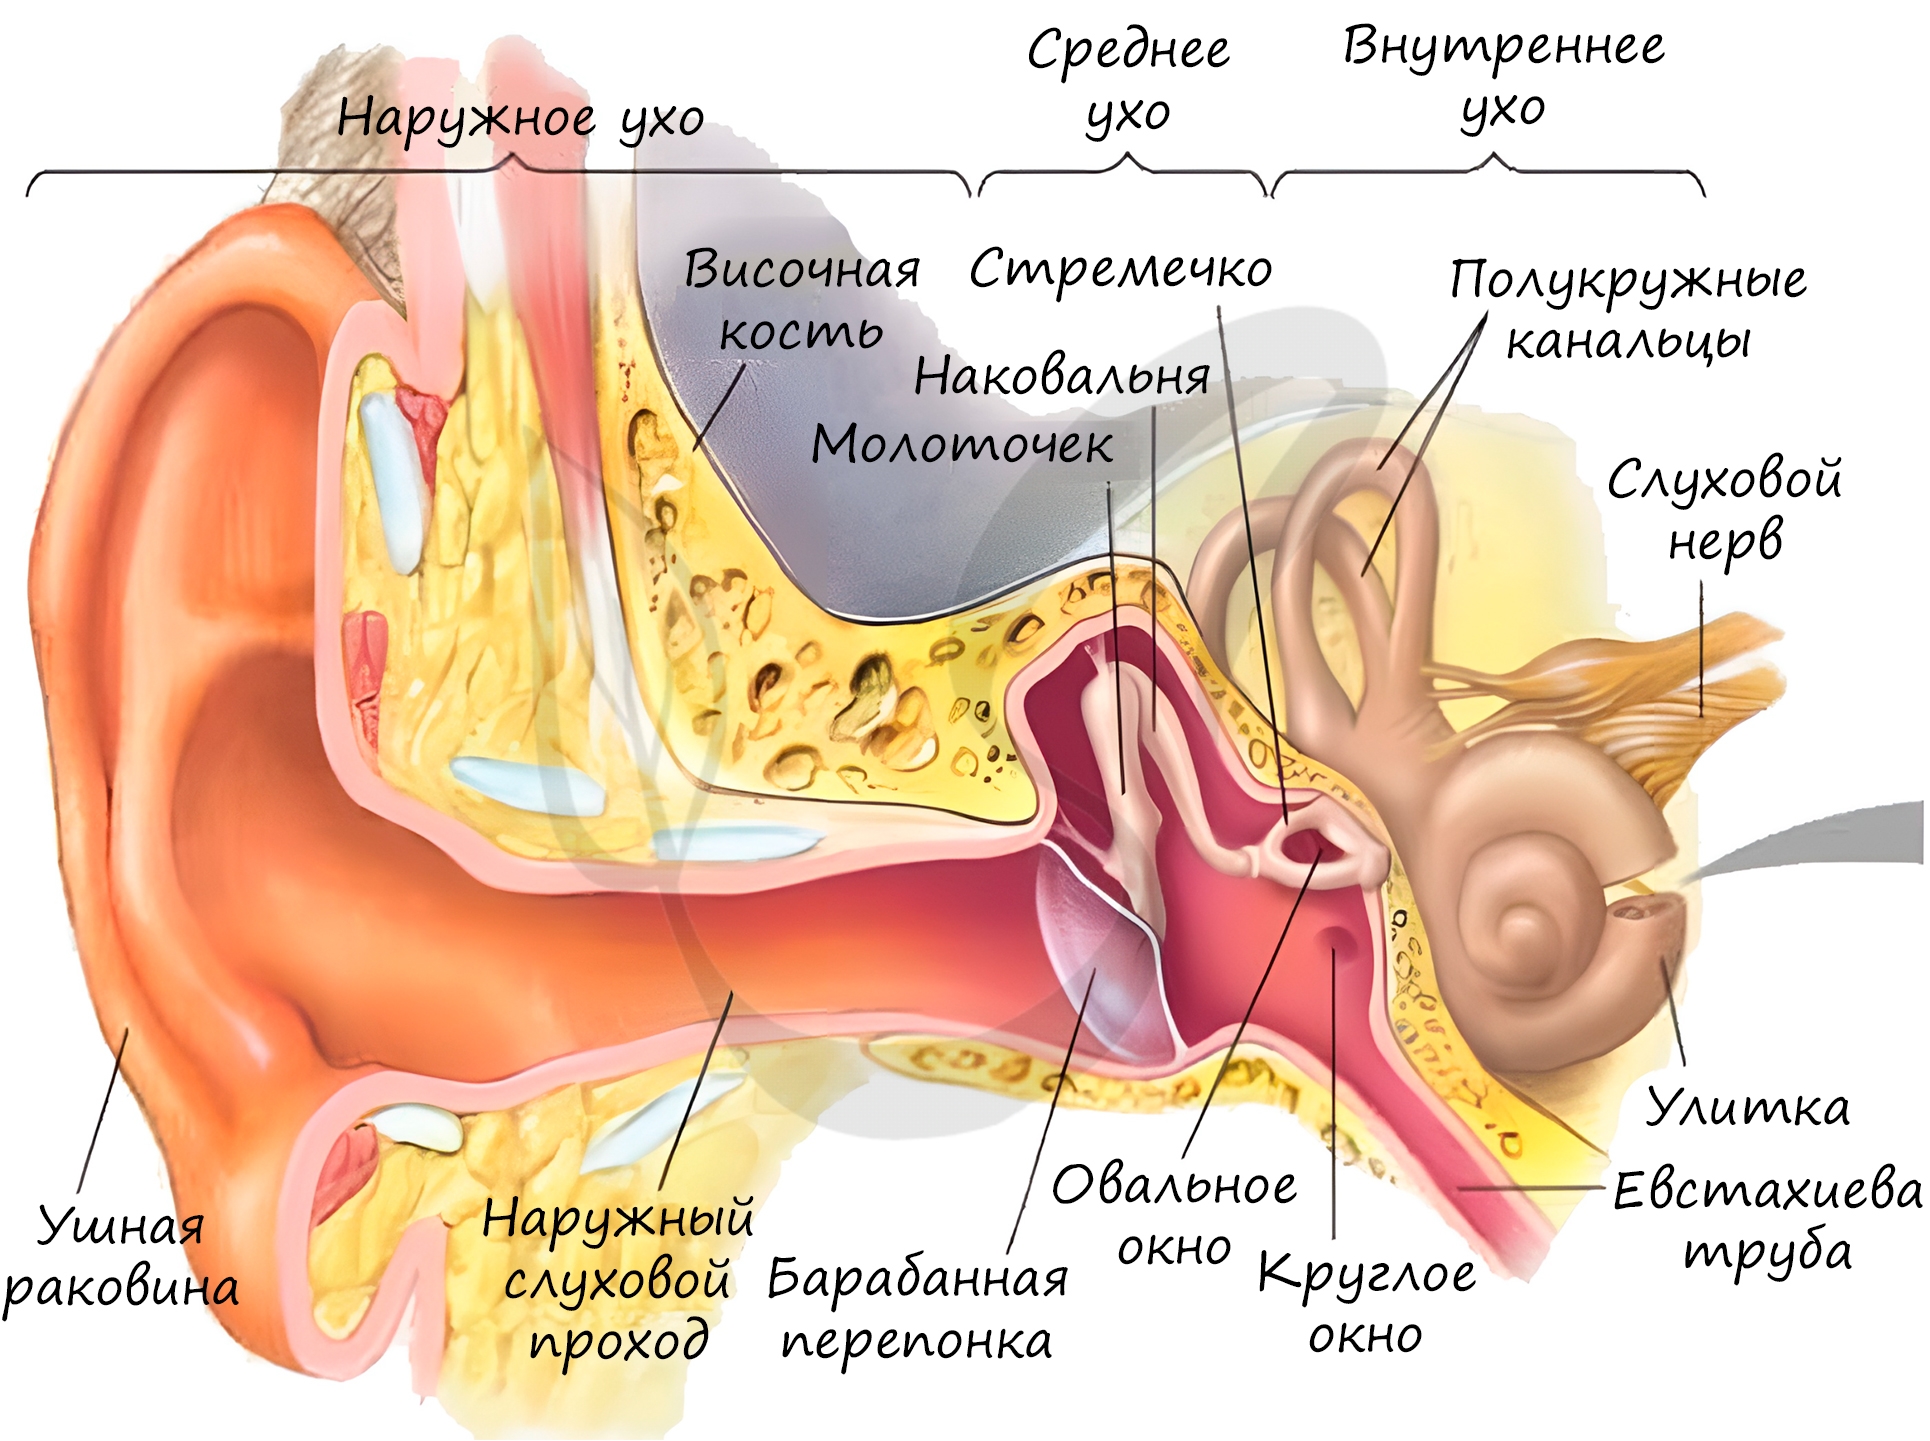 Орган слуха состоит из наружного. Строение уха человека евстахиева труба. Орган слуха наружное ухо среднее ухо внутреннее ухо. Строение наружного уха барабанная перепонка. Орган слуха внутреннее ухо анатомия.